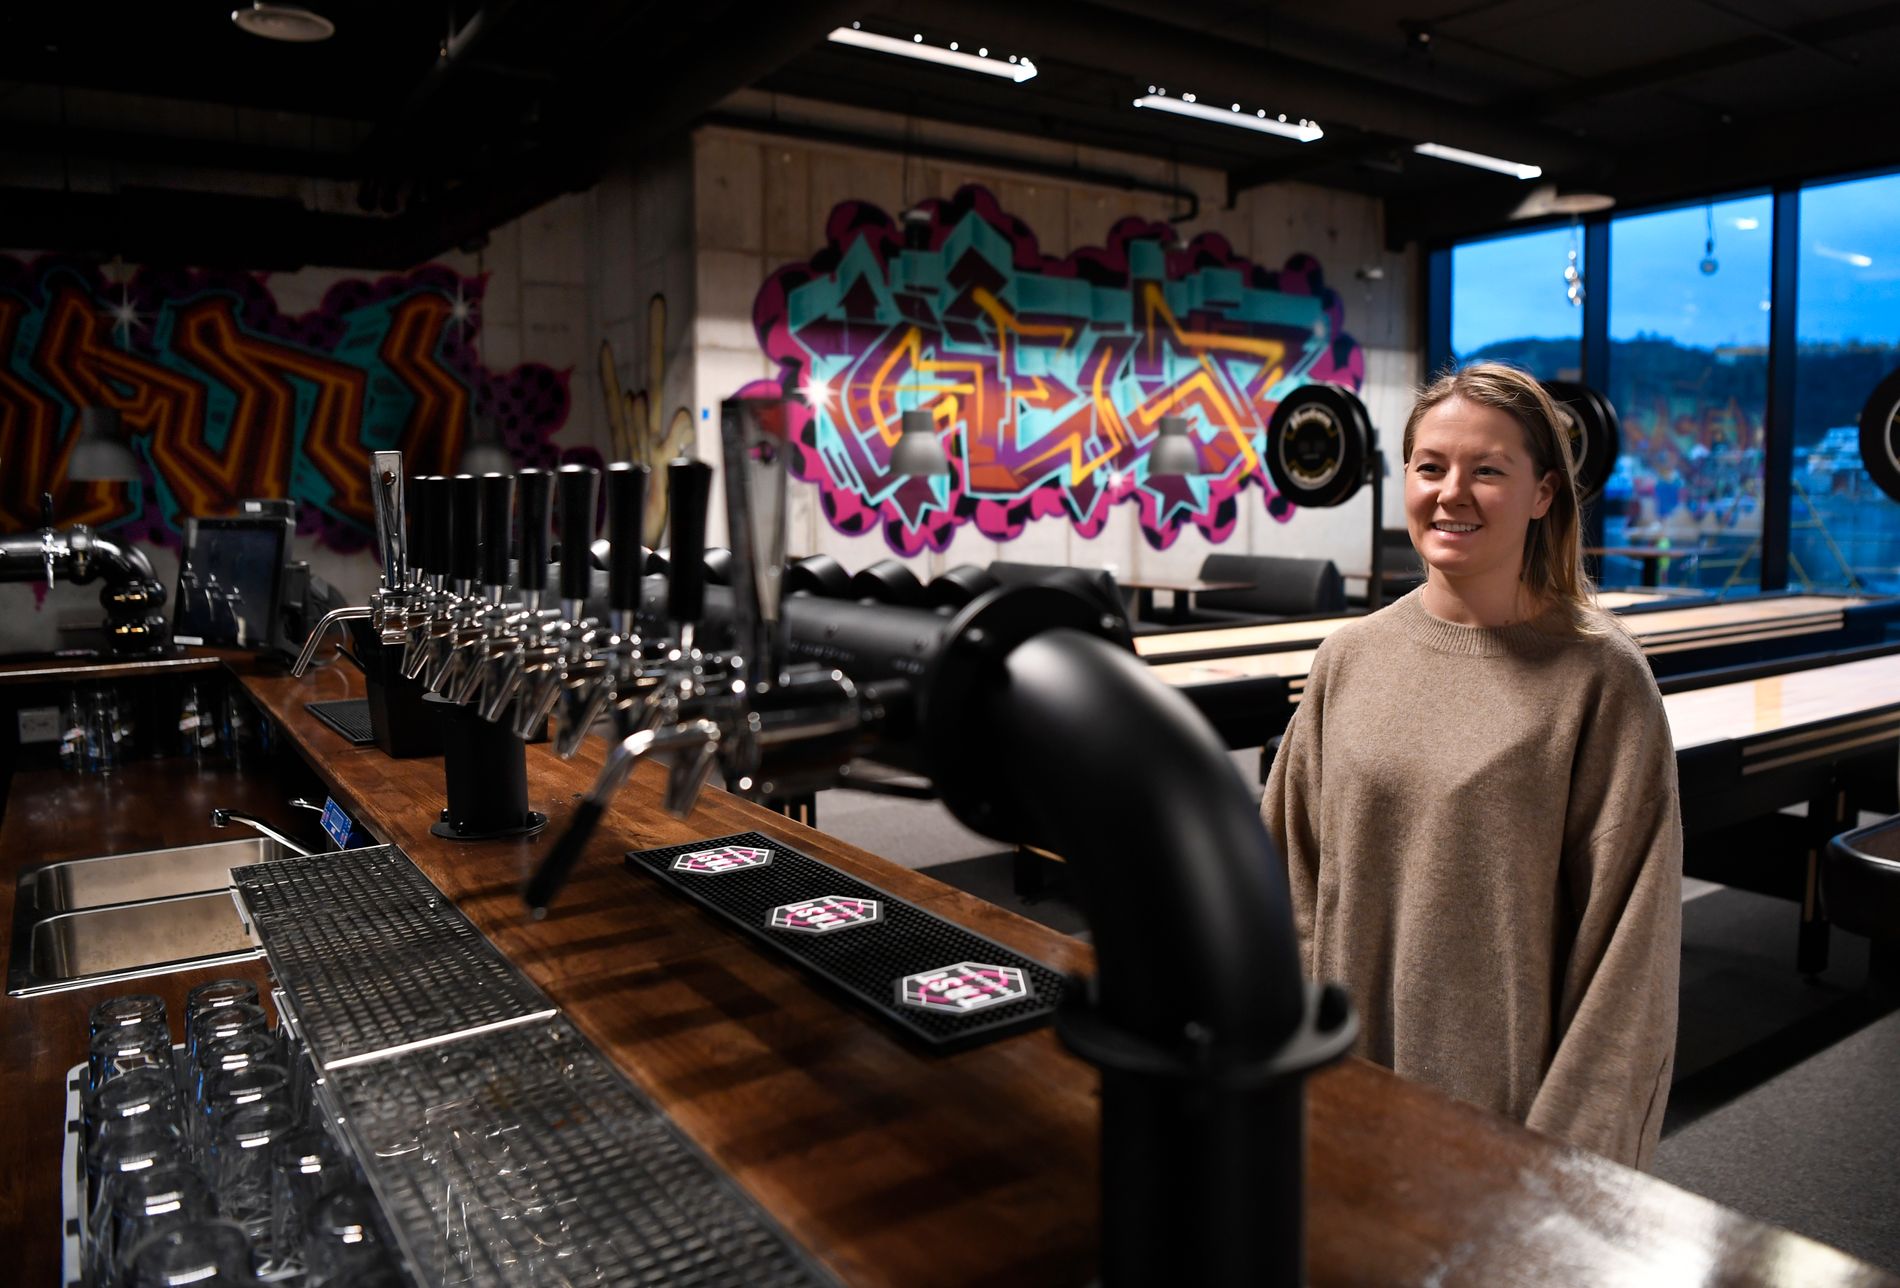 Driftssjef Elisabeth Kristiansen på Inside Sandnes Rock Café syns det er synd at filialen i Stavanger ikke får åpne - men krysser fingrene for at de åpner i Sandnes på fredag.